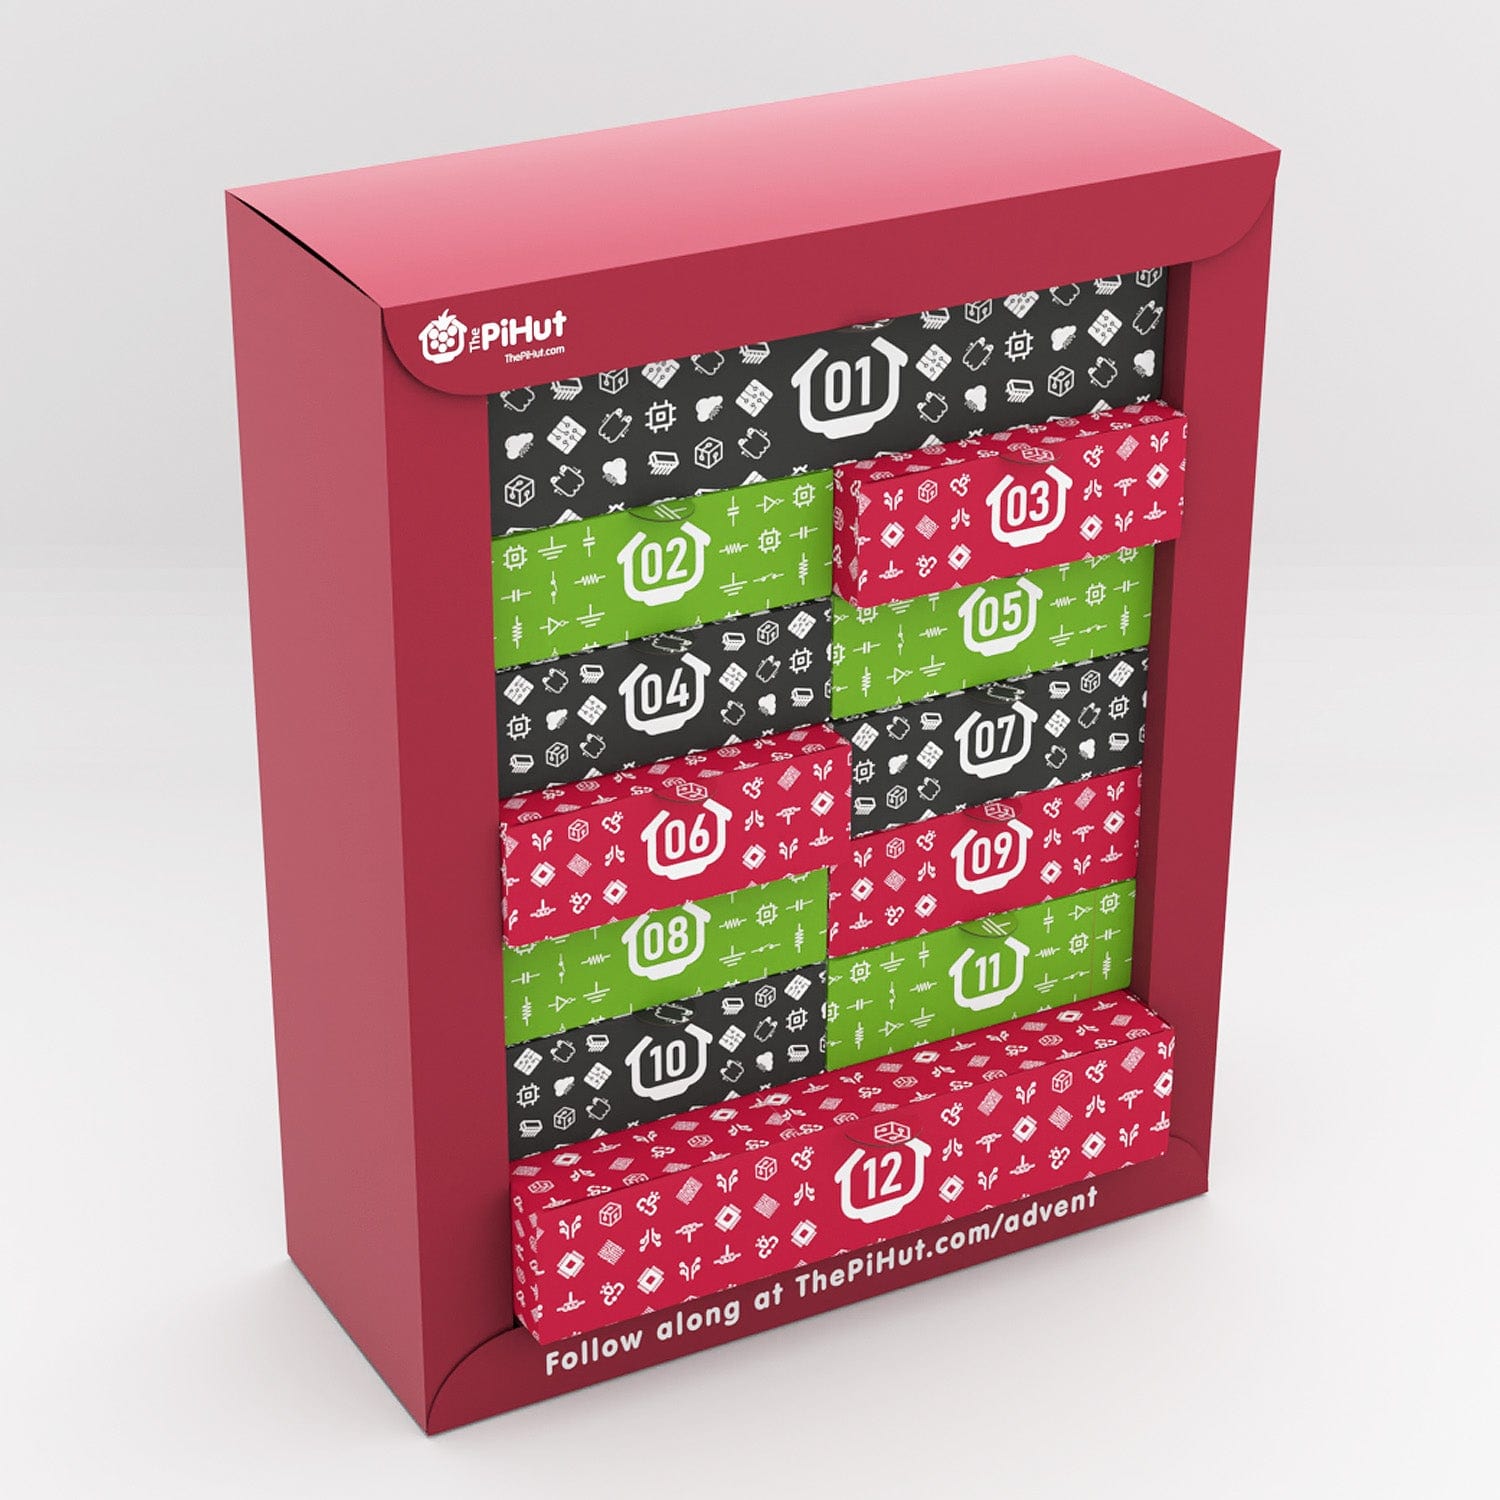 Maker Advent Calendar (includes Raspberry Pi Pico H) - The Pi Hut